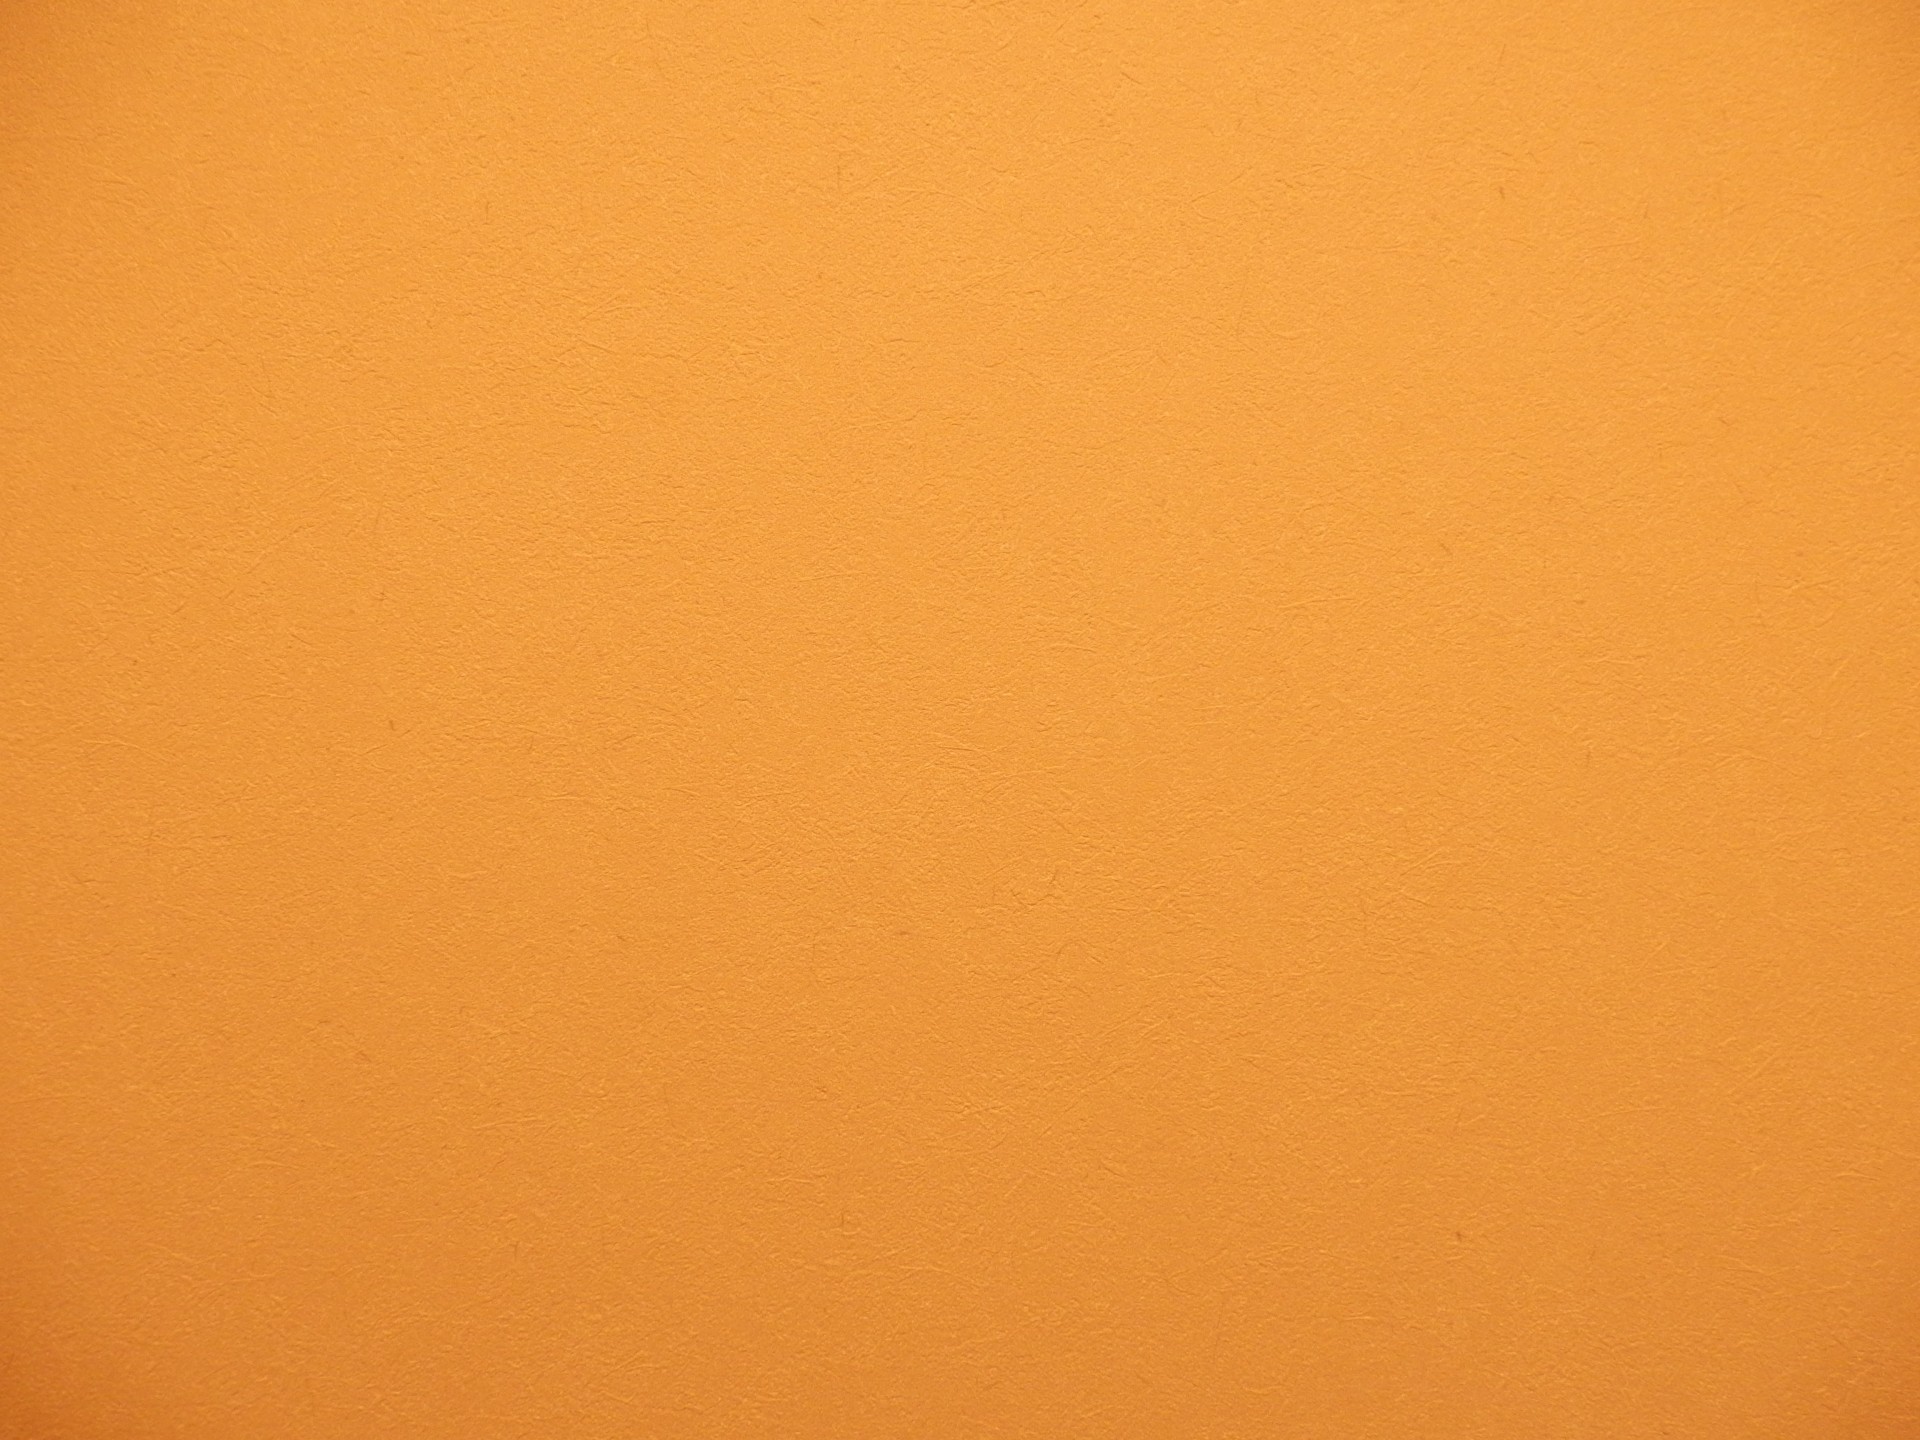 текстура оранжевая лен бесплатно